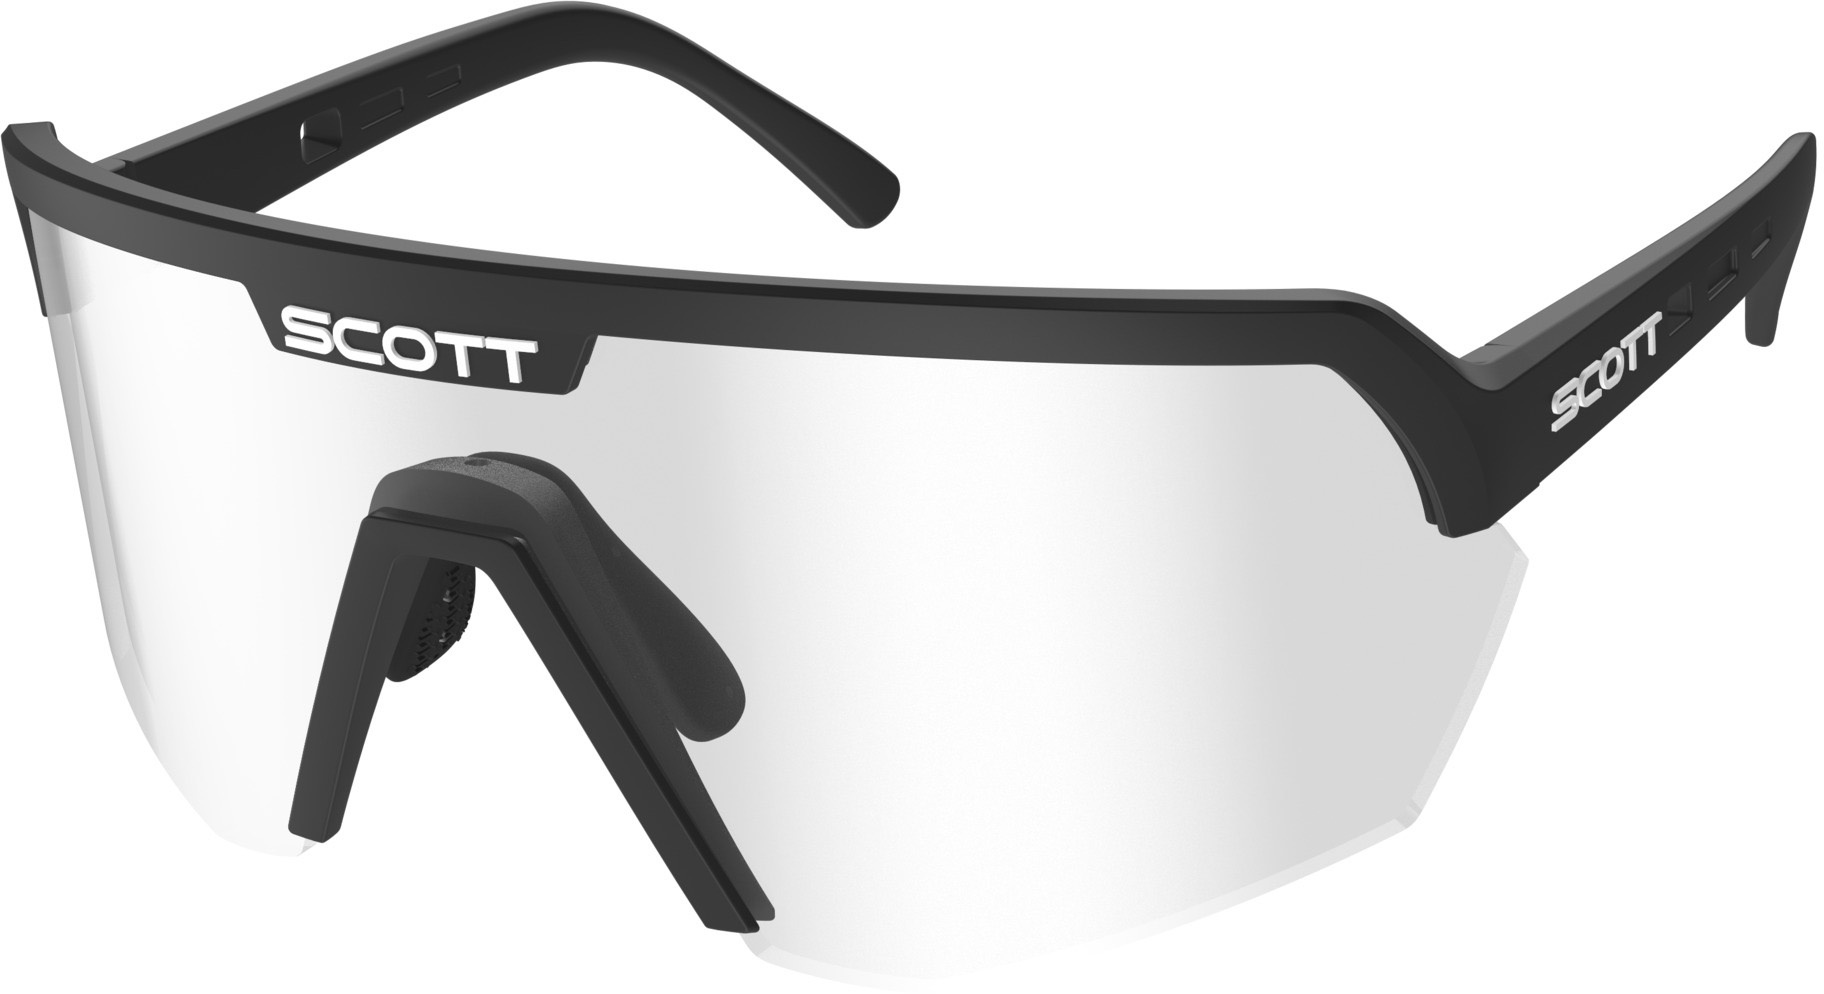  - Scott Sport Shield Cykelbrille - Sort